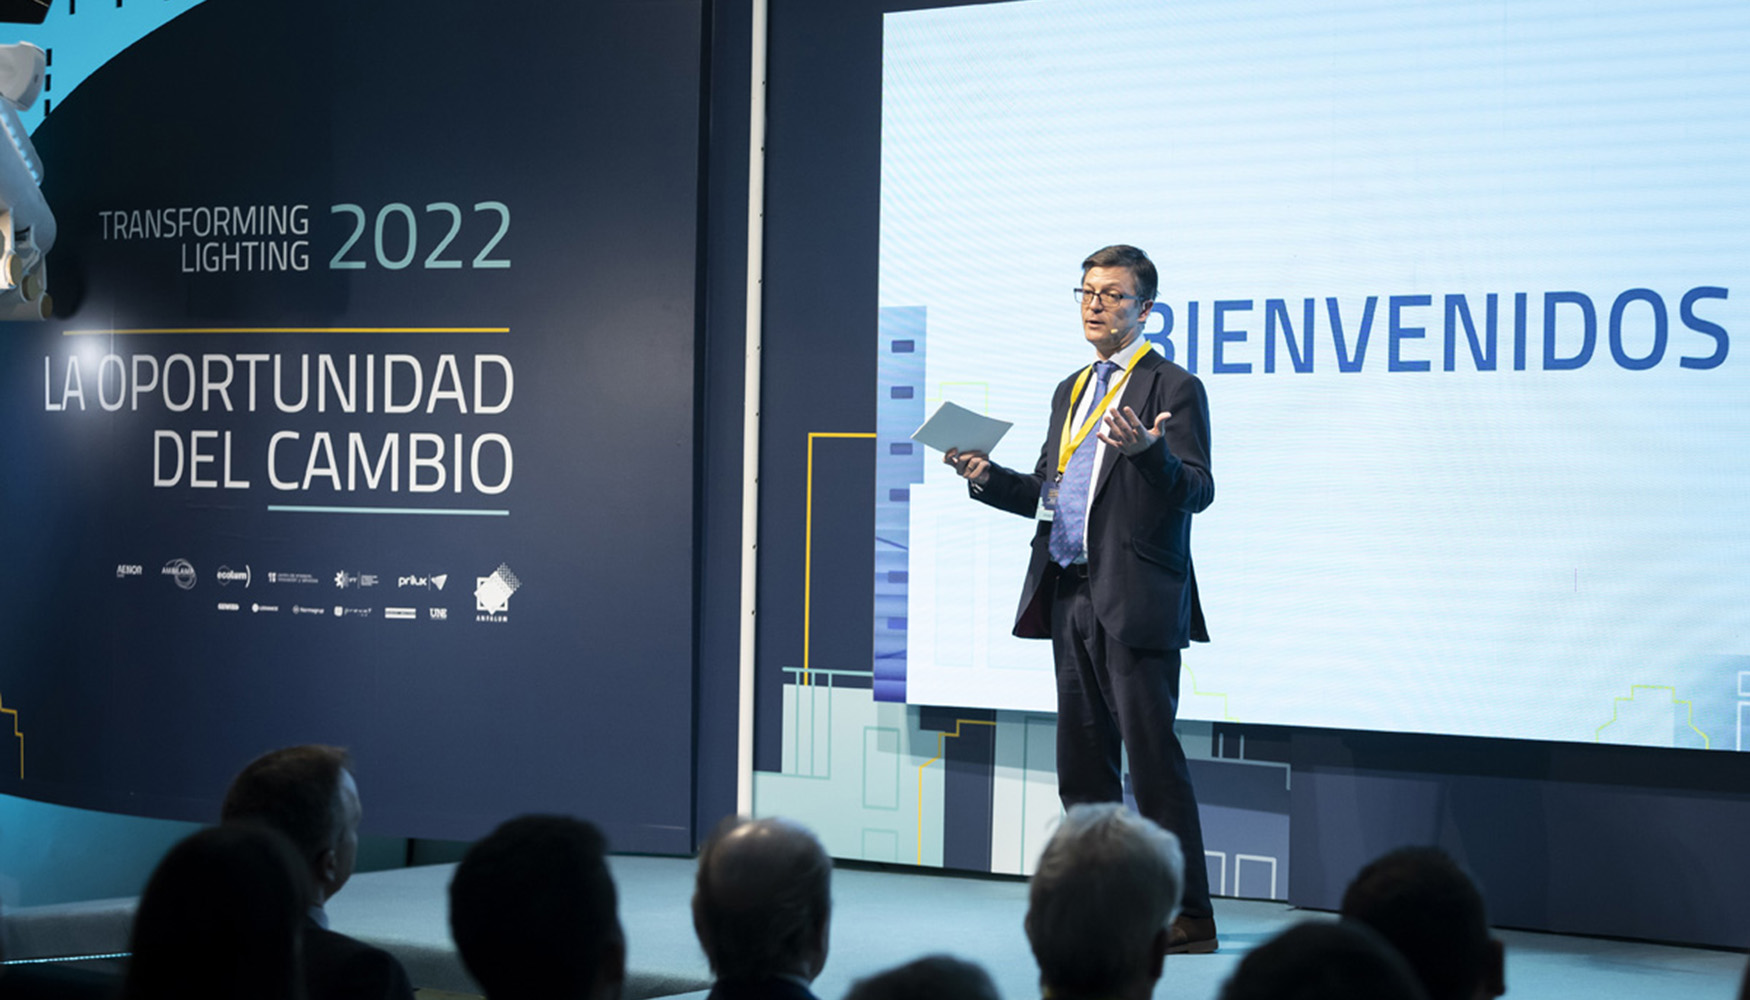 La inauguración de Transforming Lighting 2022 corrió a cargo de José Antonio Martínez Páramo...